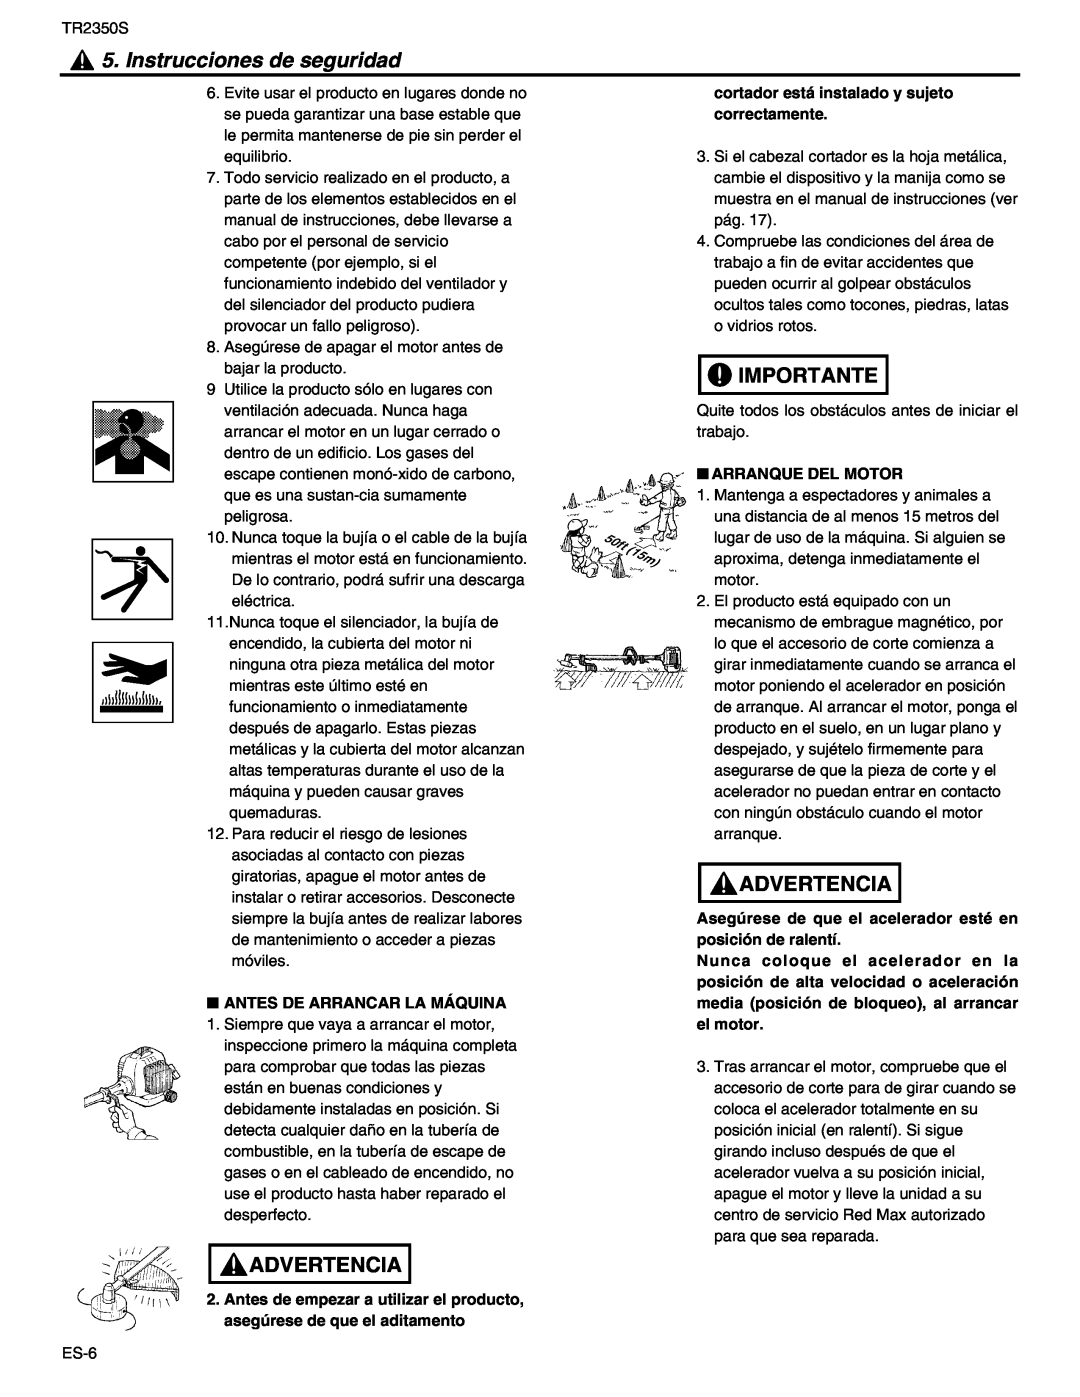 RedMax TR2350S manual Instrucciones de seguridad, Advertencia, Importante, Antes De Arrancar La Máquina, Arranque Del Motor 